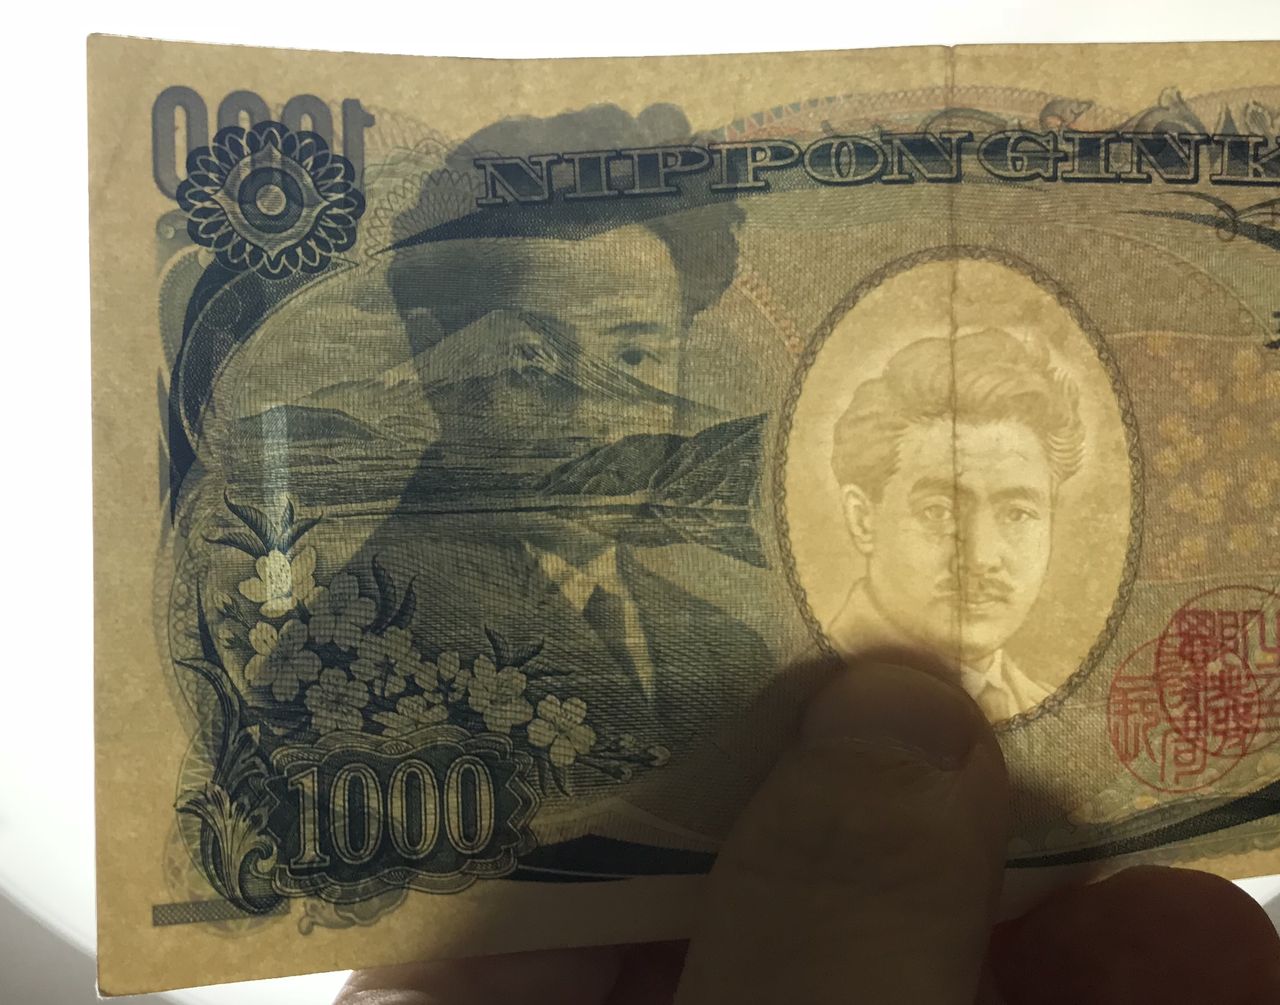 知らなかった 千円札に隠された 衝撃的な秘密 が話題に １ドル札との意外な共通点 秒刊sunday